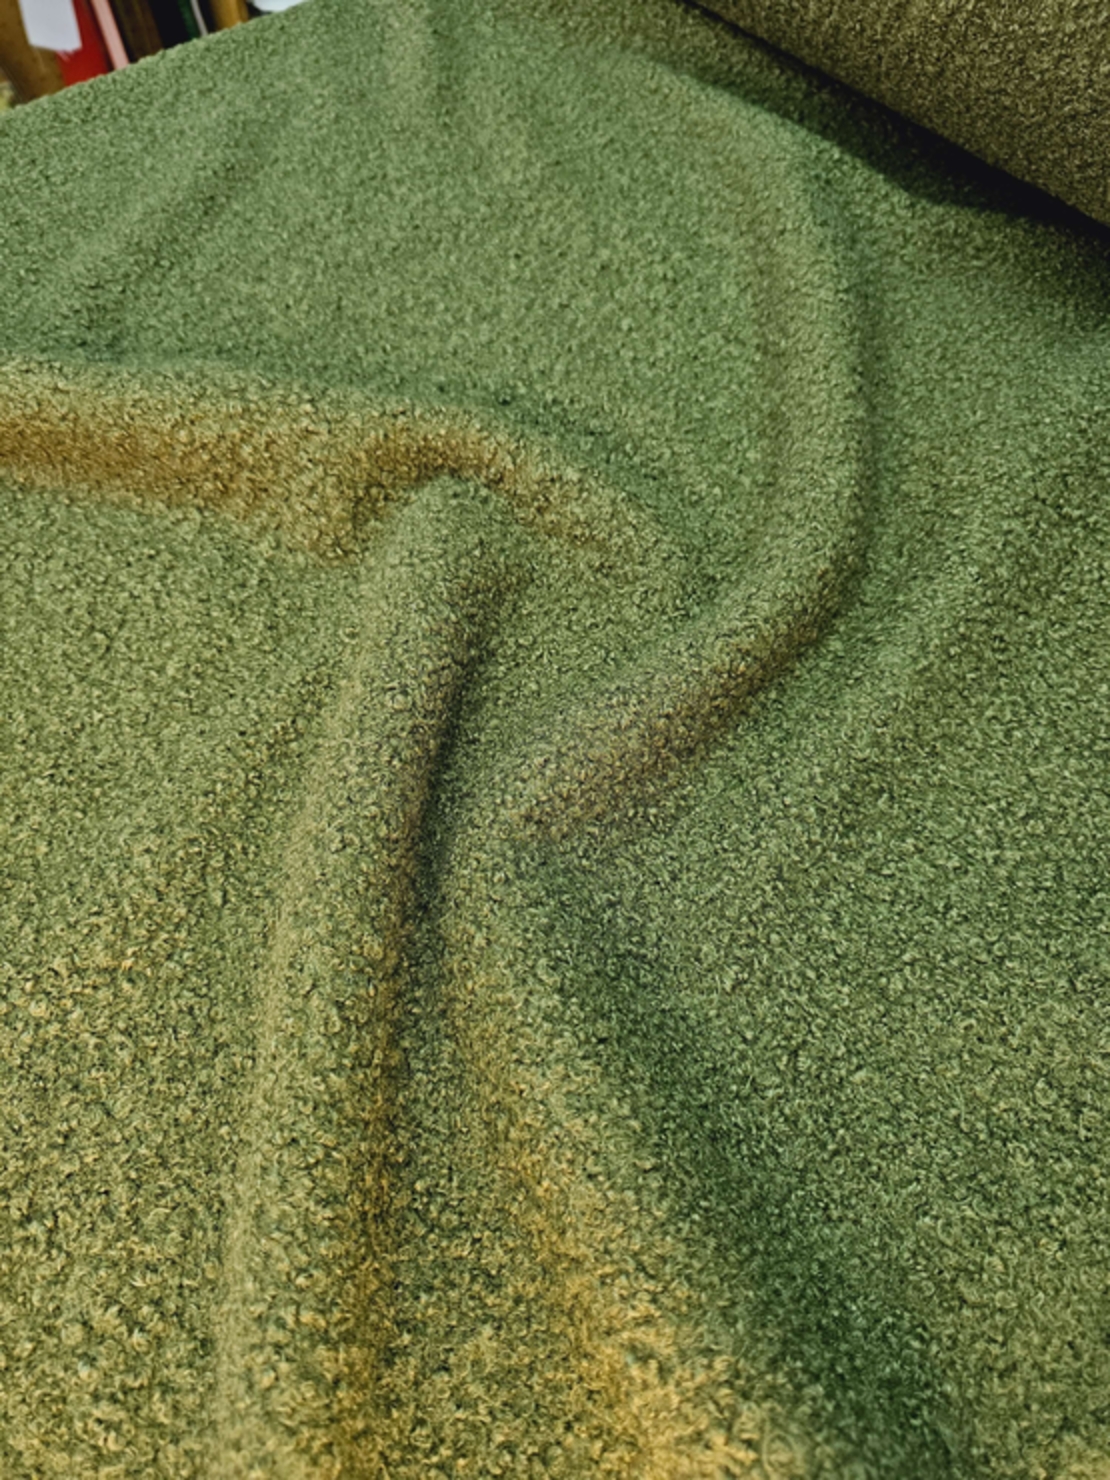 אריג בוקלה צבע זית דגם טדי